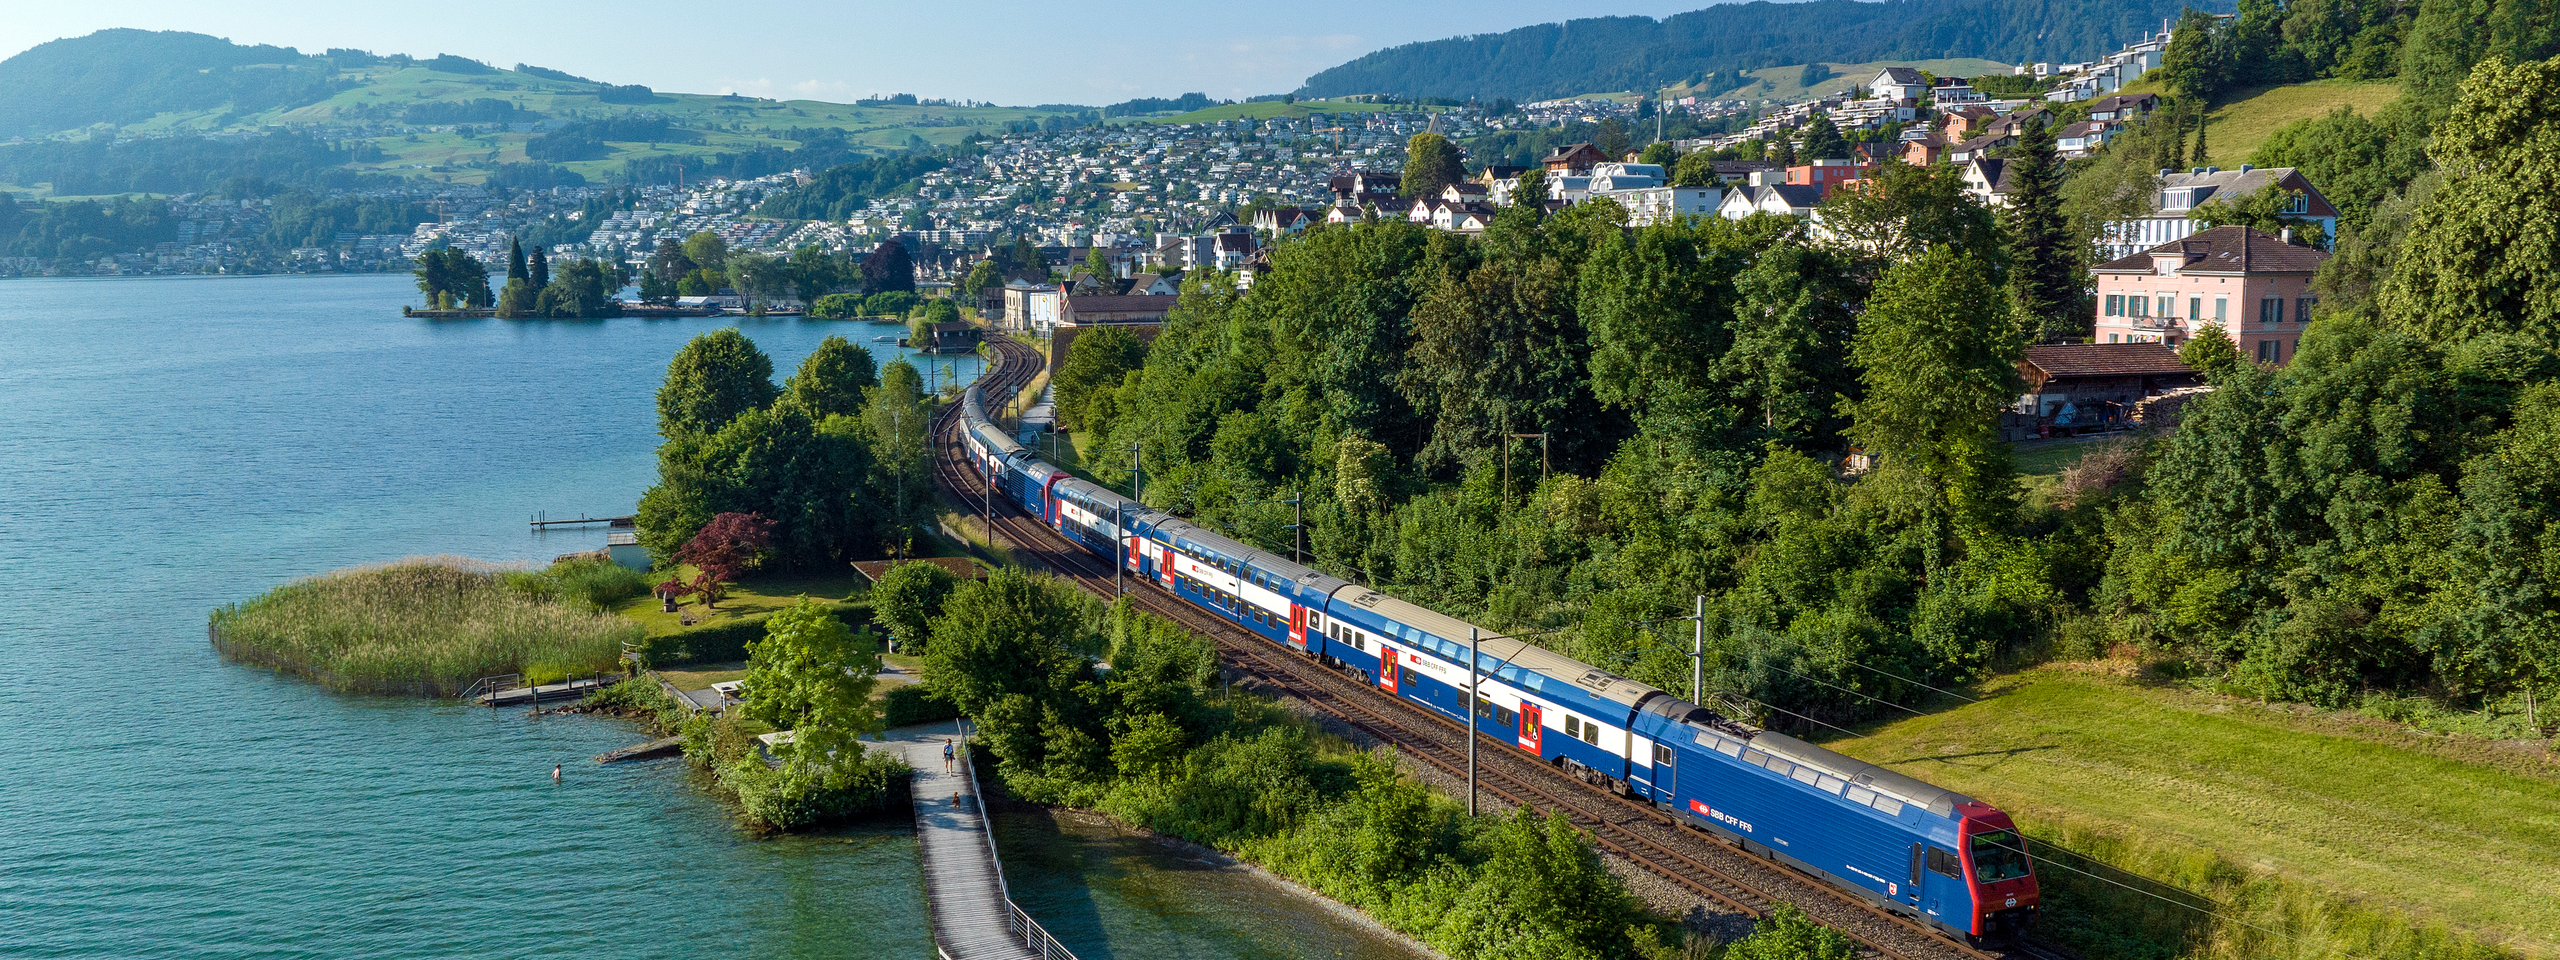 Ein Doppelstockzug der ersten Generation der Zürcher S-Bahn am Zürichsee